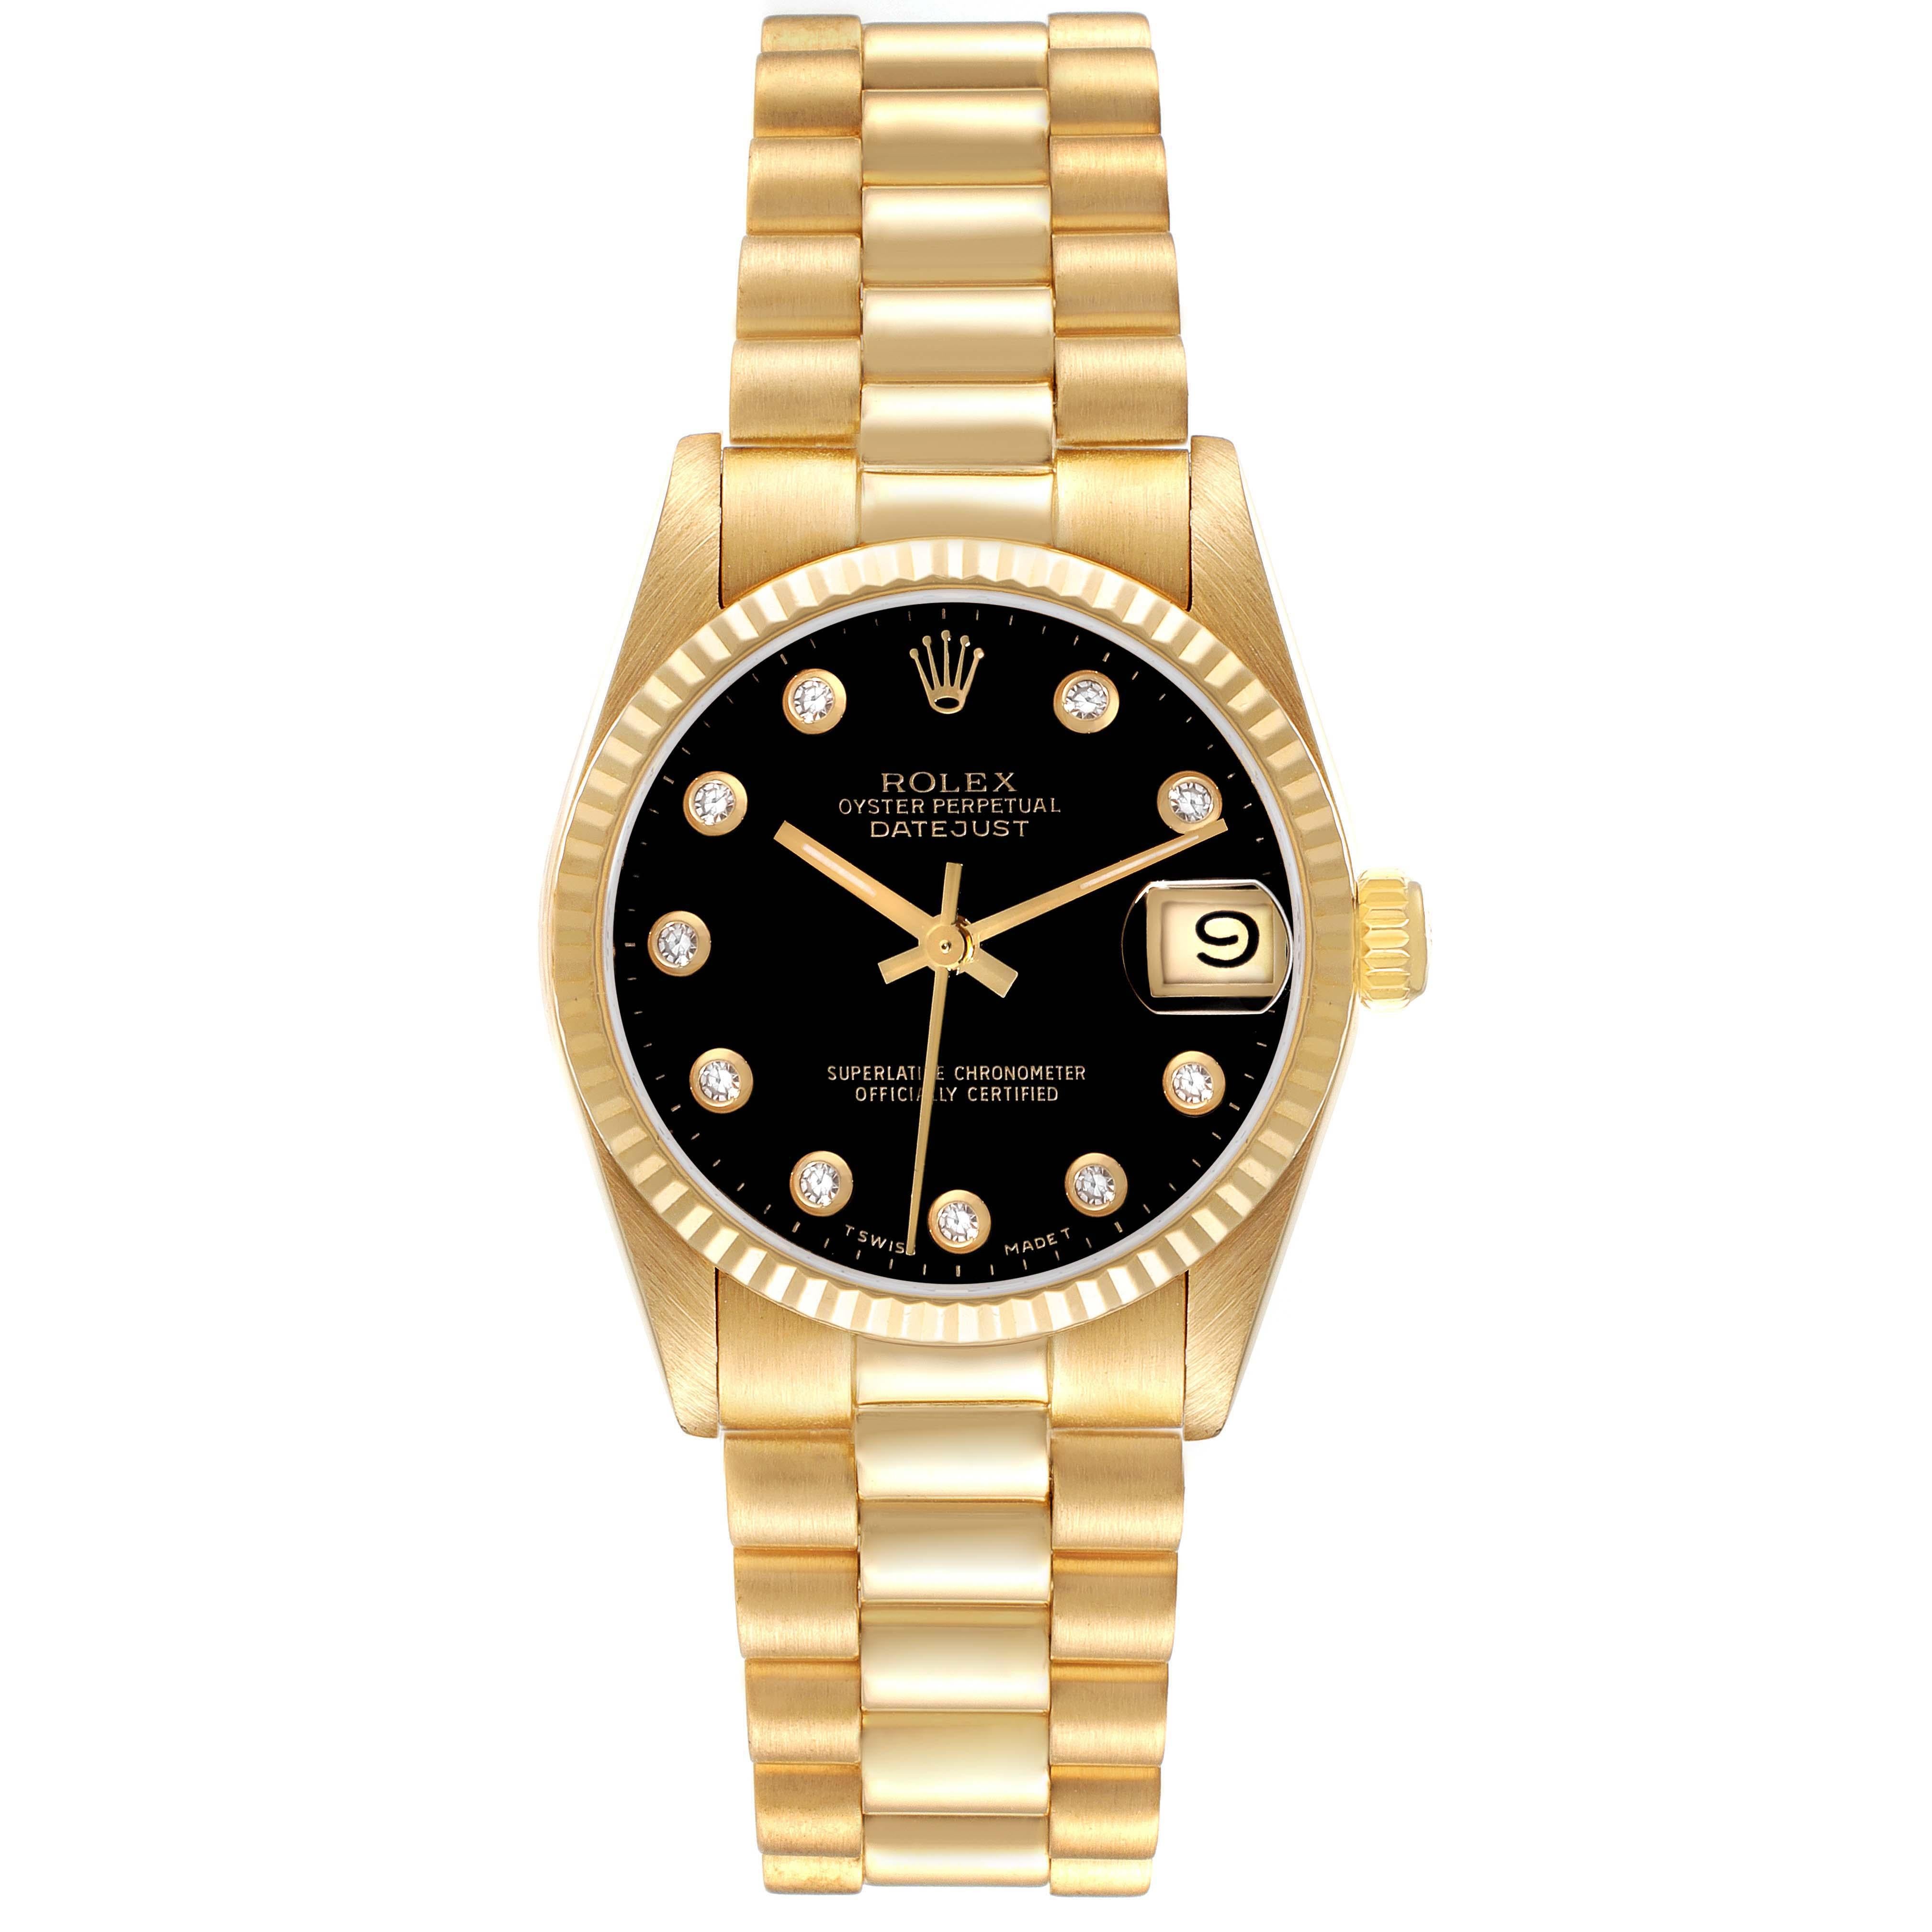 Rolex President Midsize Yellow Gold Onyx Diamond Dial Ladies Watch 68278. Mouvement à remontage automatique certifié chronomètre. Boîtier en or jaune 18 carats de 31,0 mm de diamètre. Logo Rolex sur la couronne. Lunette cannelée en or jaune 18k.